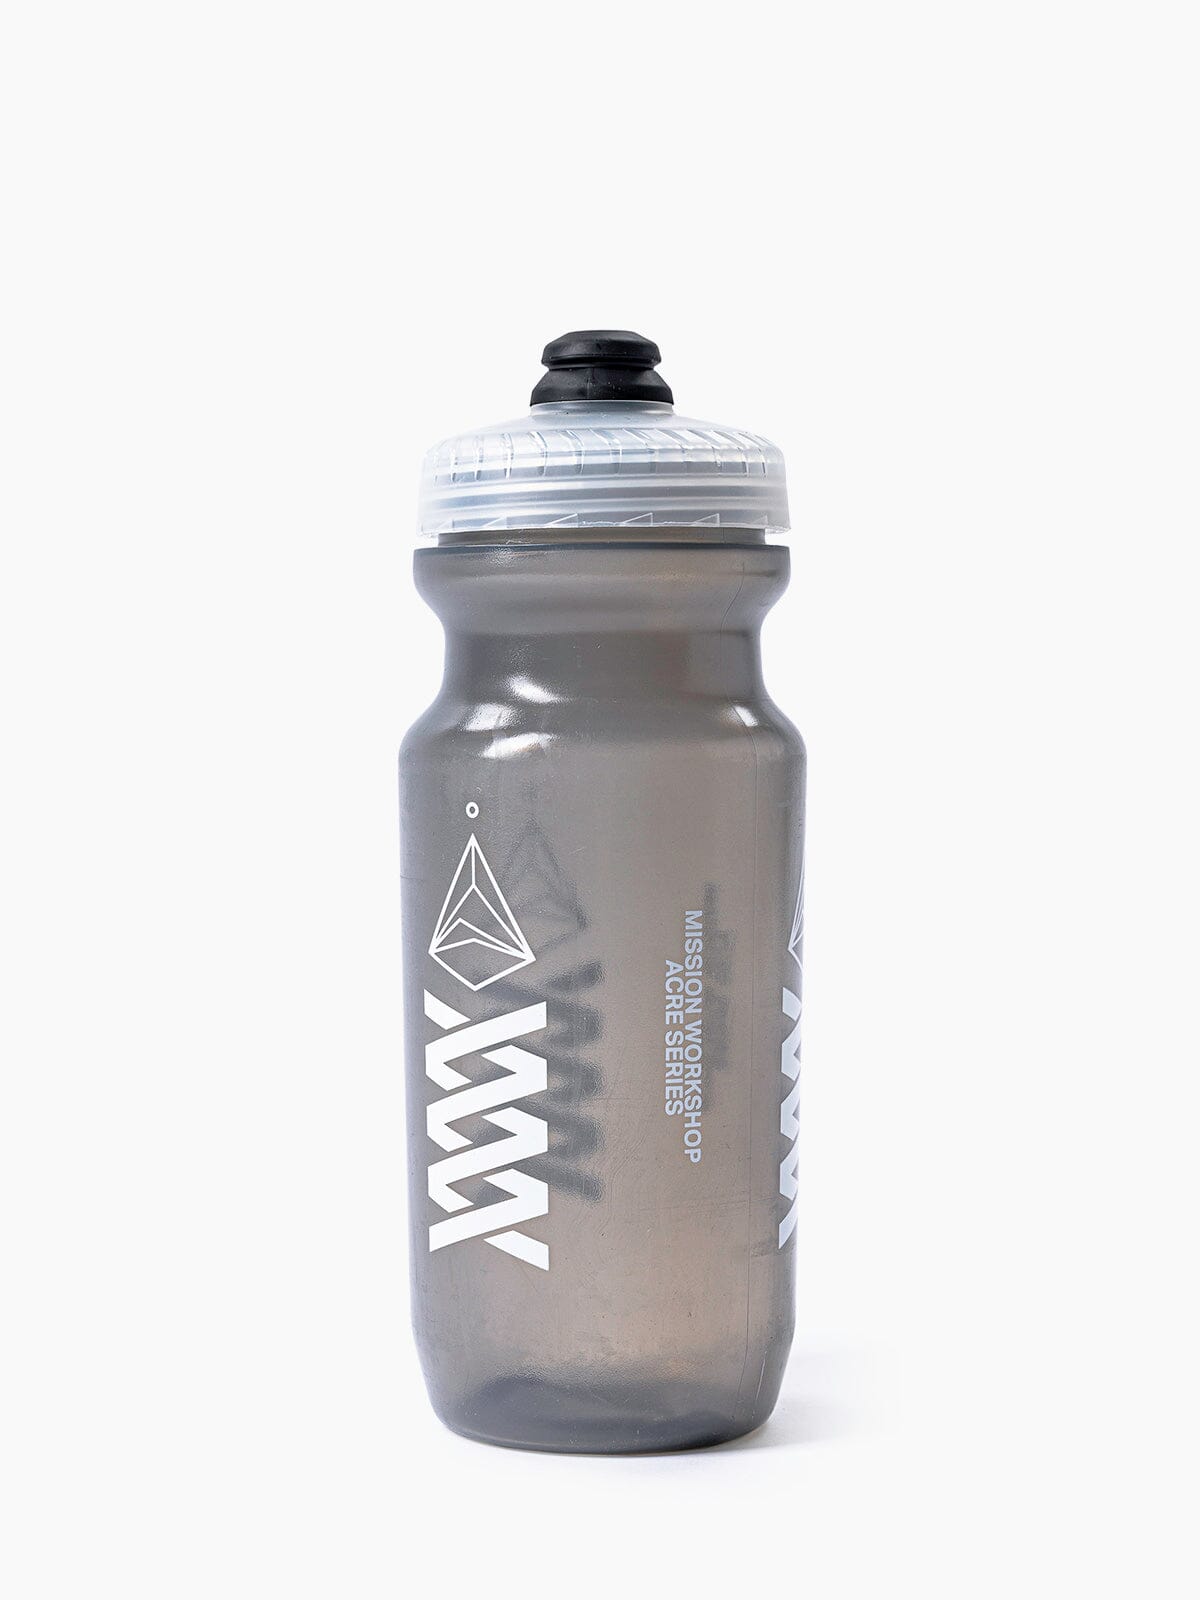 Acre Series Water Bottle by Mission Workshop - Bolsas resistentes a la intemperie y ropa técnica - San Francisco y Los Ángeles - Construidas para durar - Garantizadas para siempre